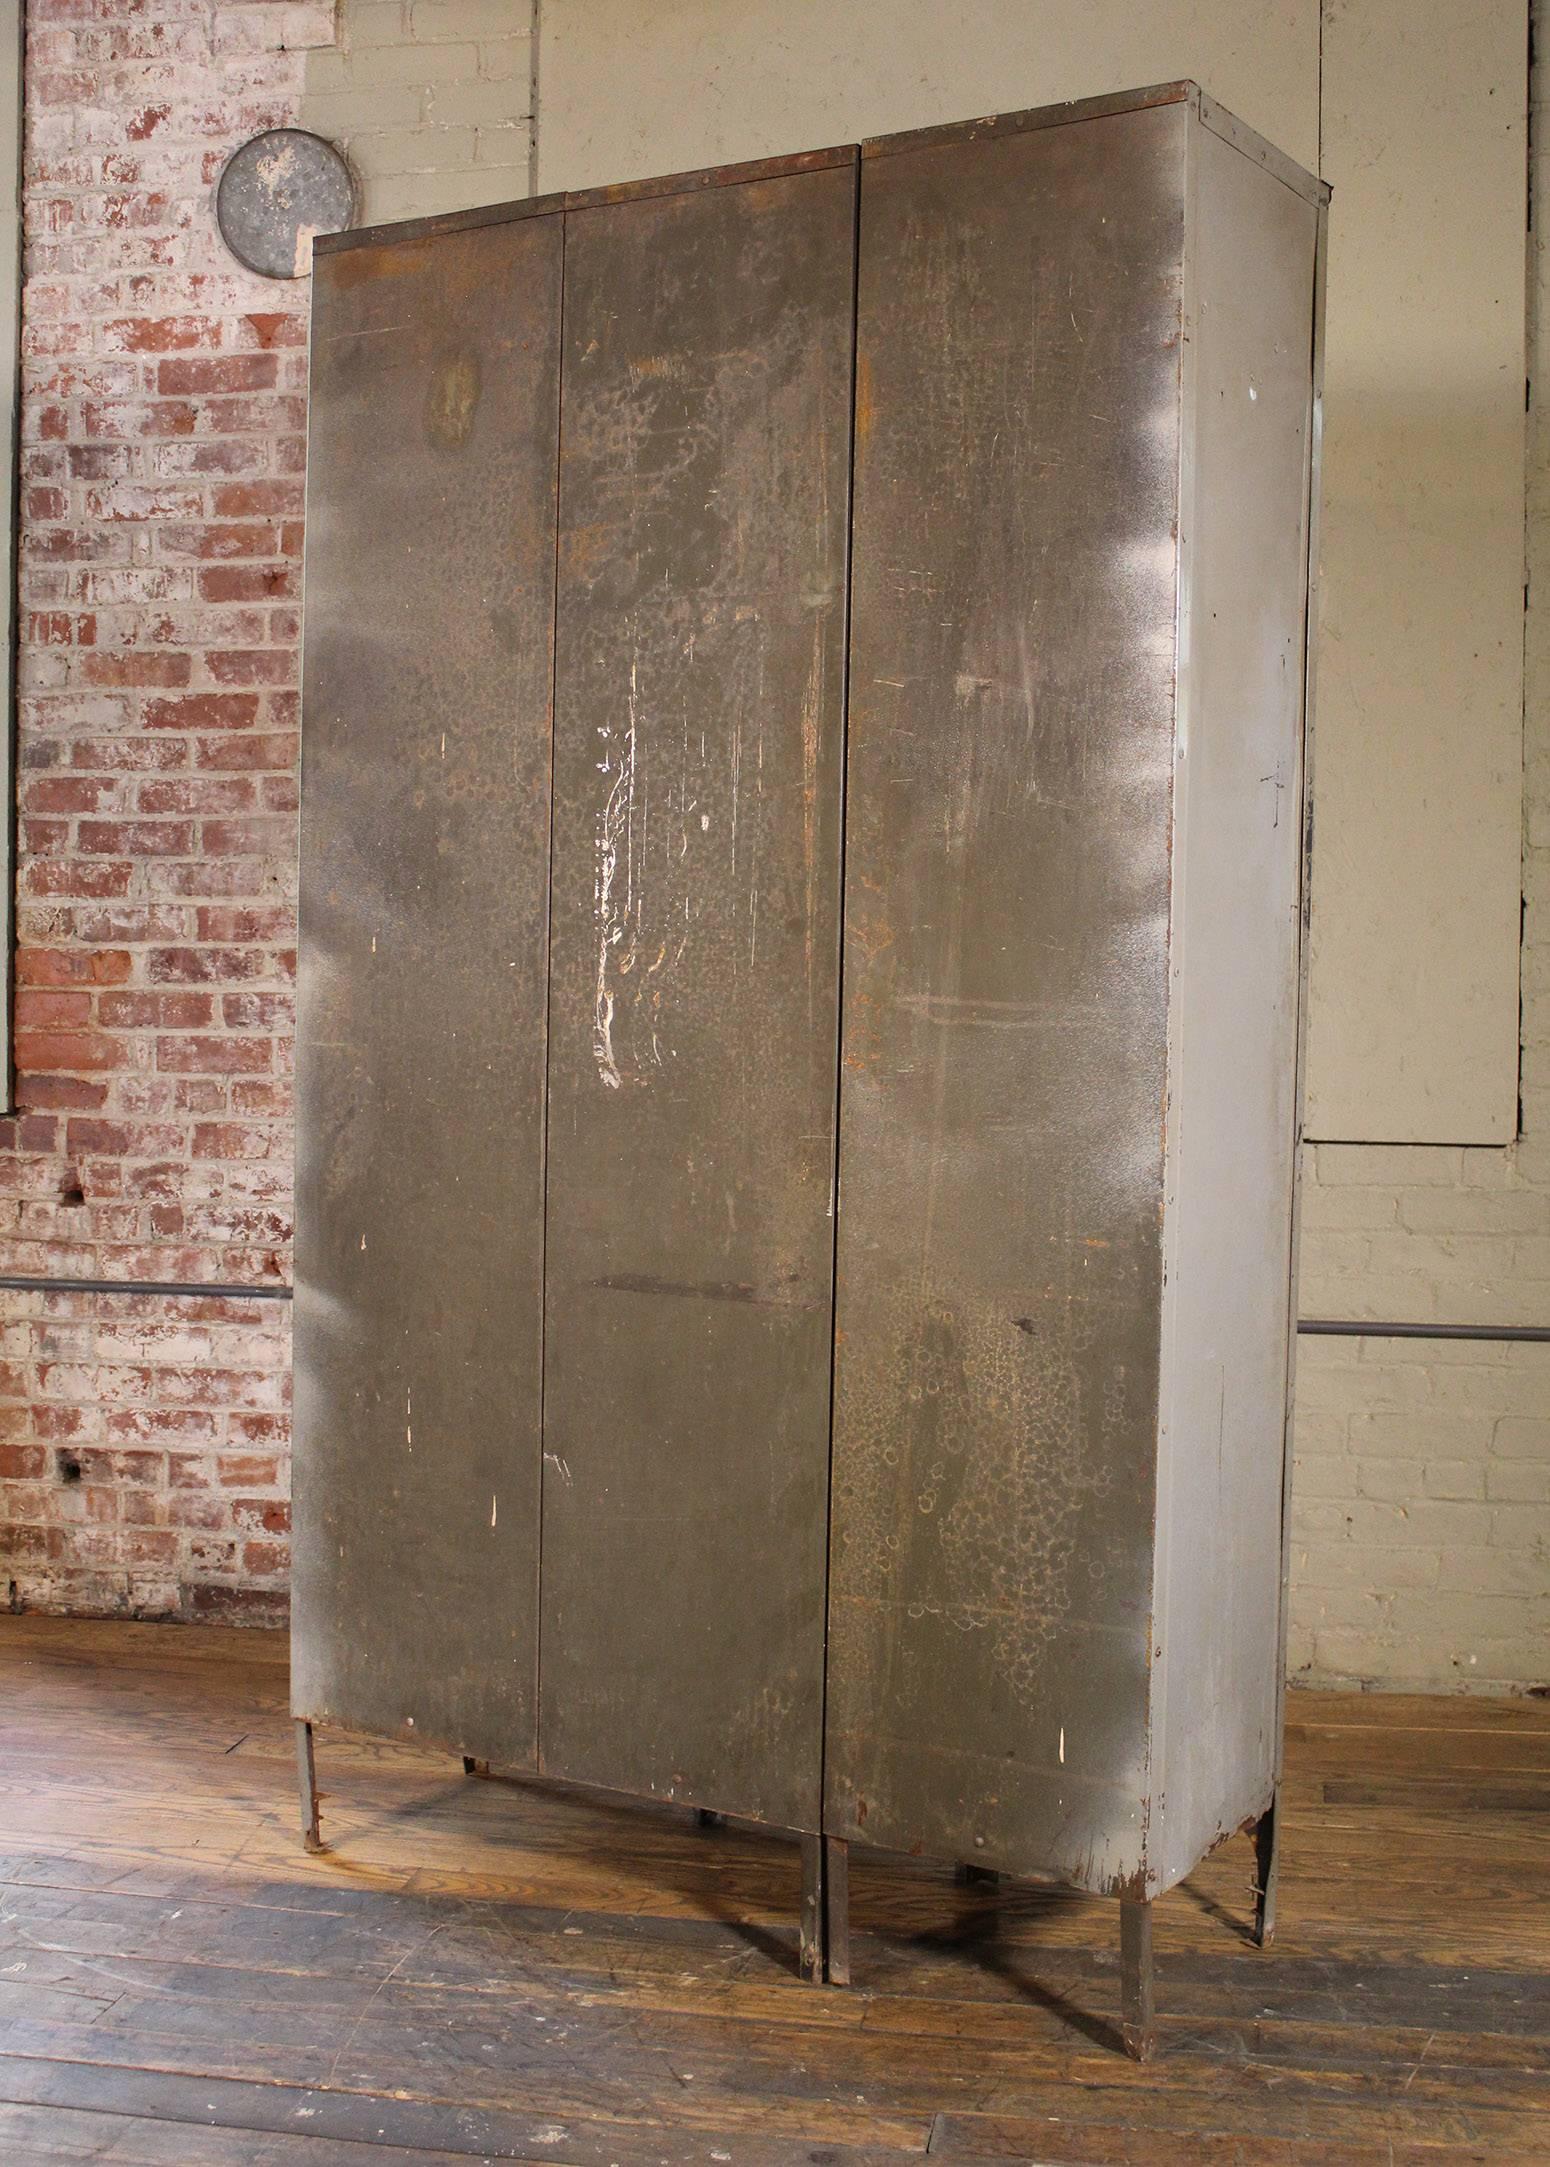 20th Century Storage Lockers Vintage Industrial Set of Three Metal Steel Gym School